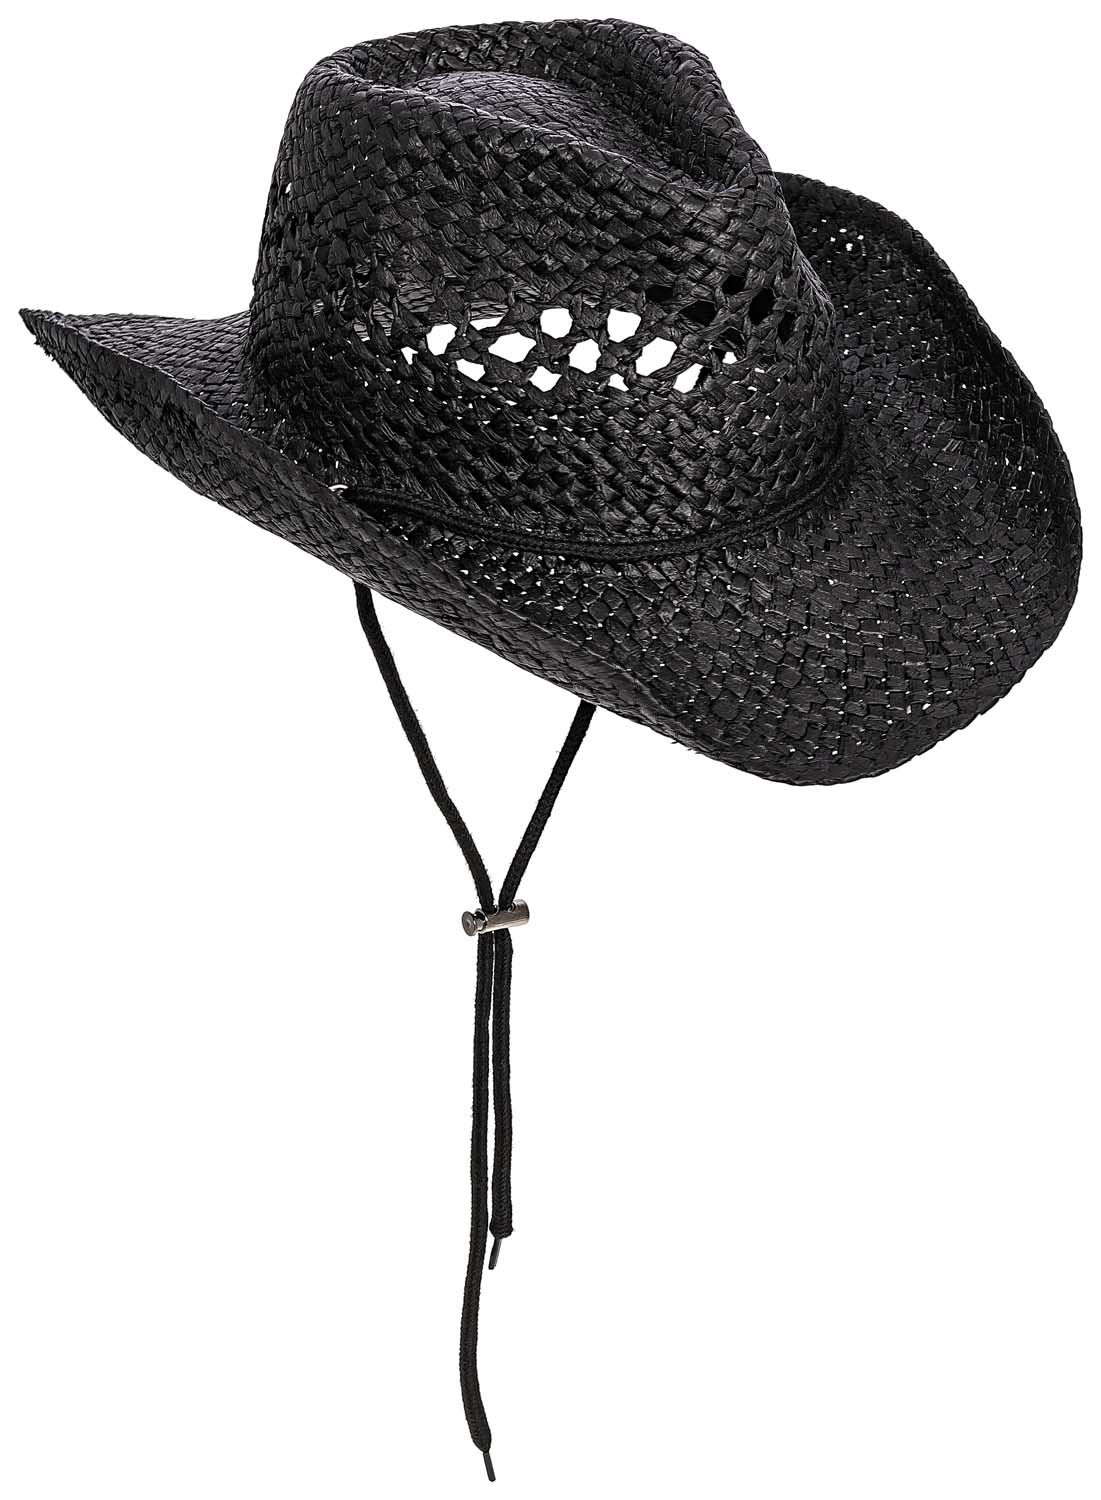 Sombrero - Black Cowboy